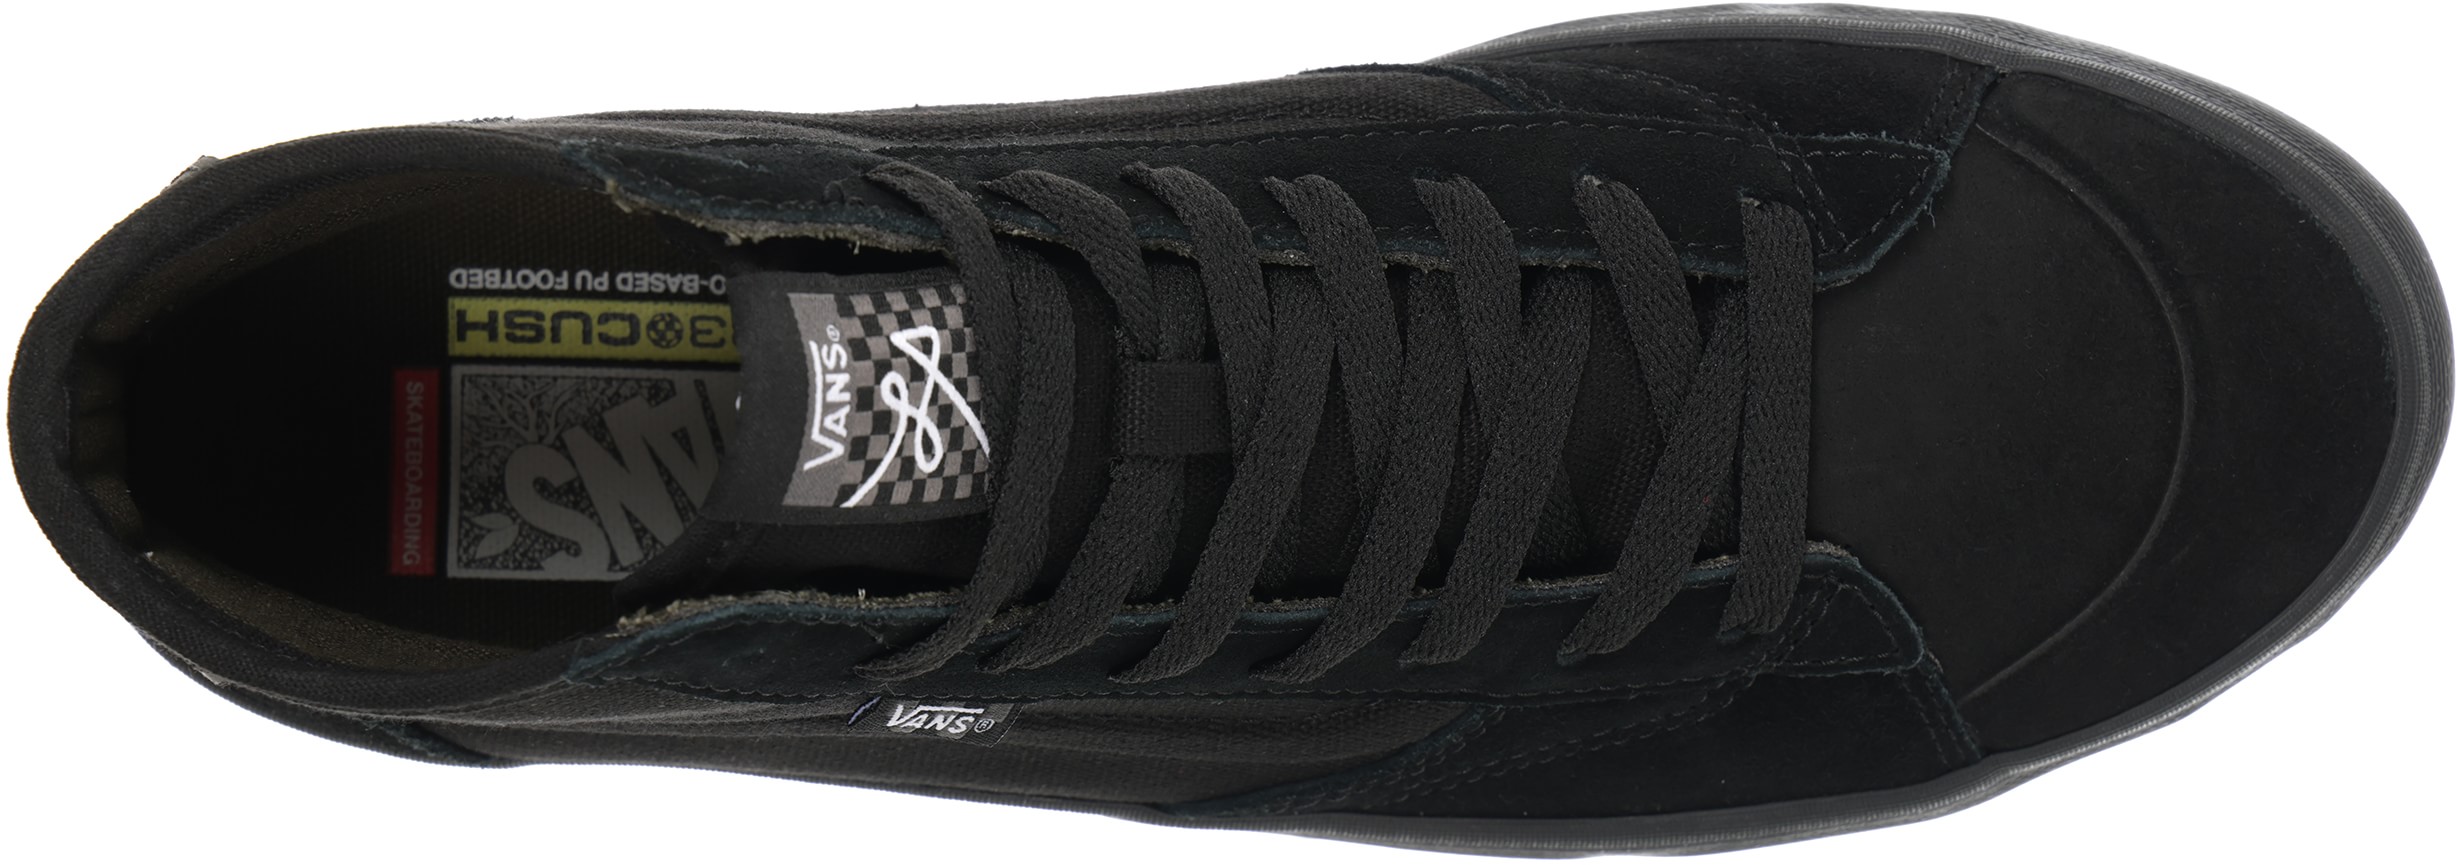 Vans The Lizzie Pro Skate Shoes - fatigue/black | Tactics